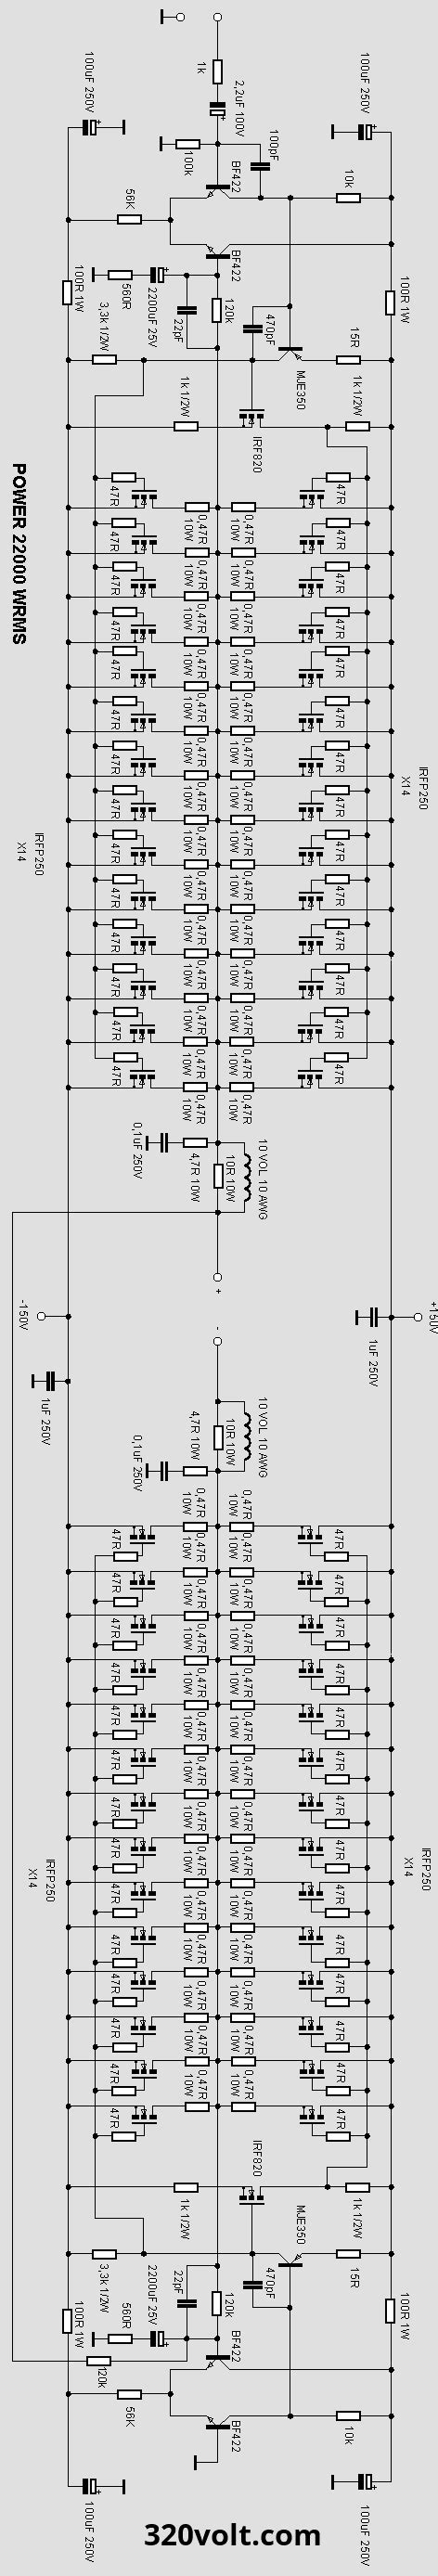 1000w Power Amplifier Circuit Diagram Pdf